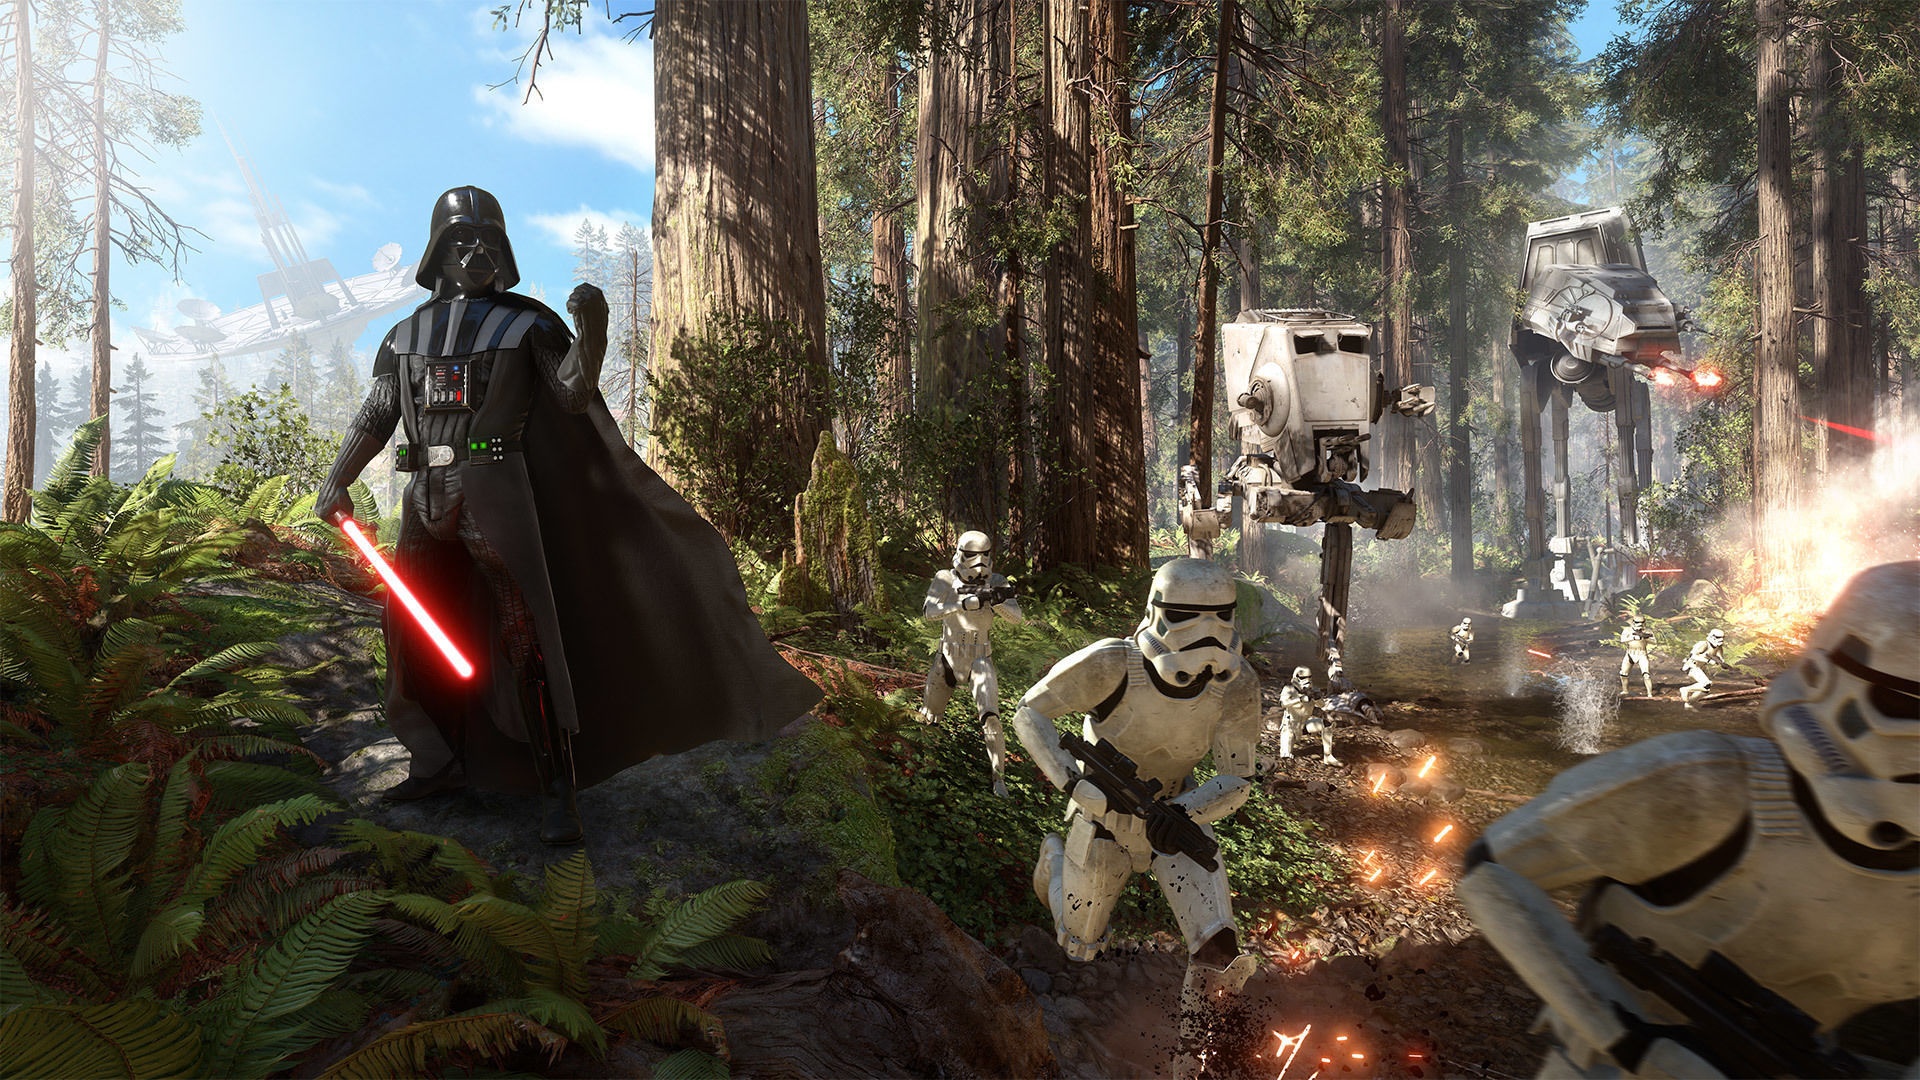 Wallpaper Star Wars Battlefront Stormtrooper Forest Wars Battlefront Endor